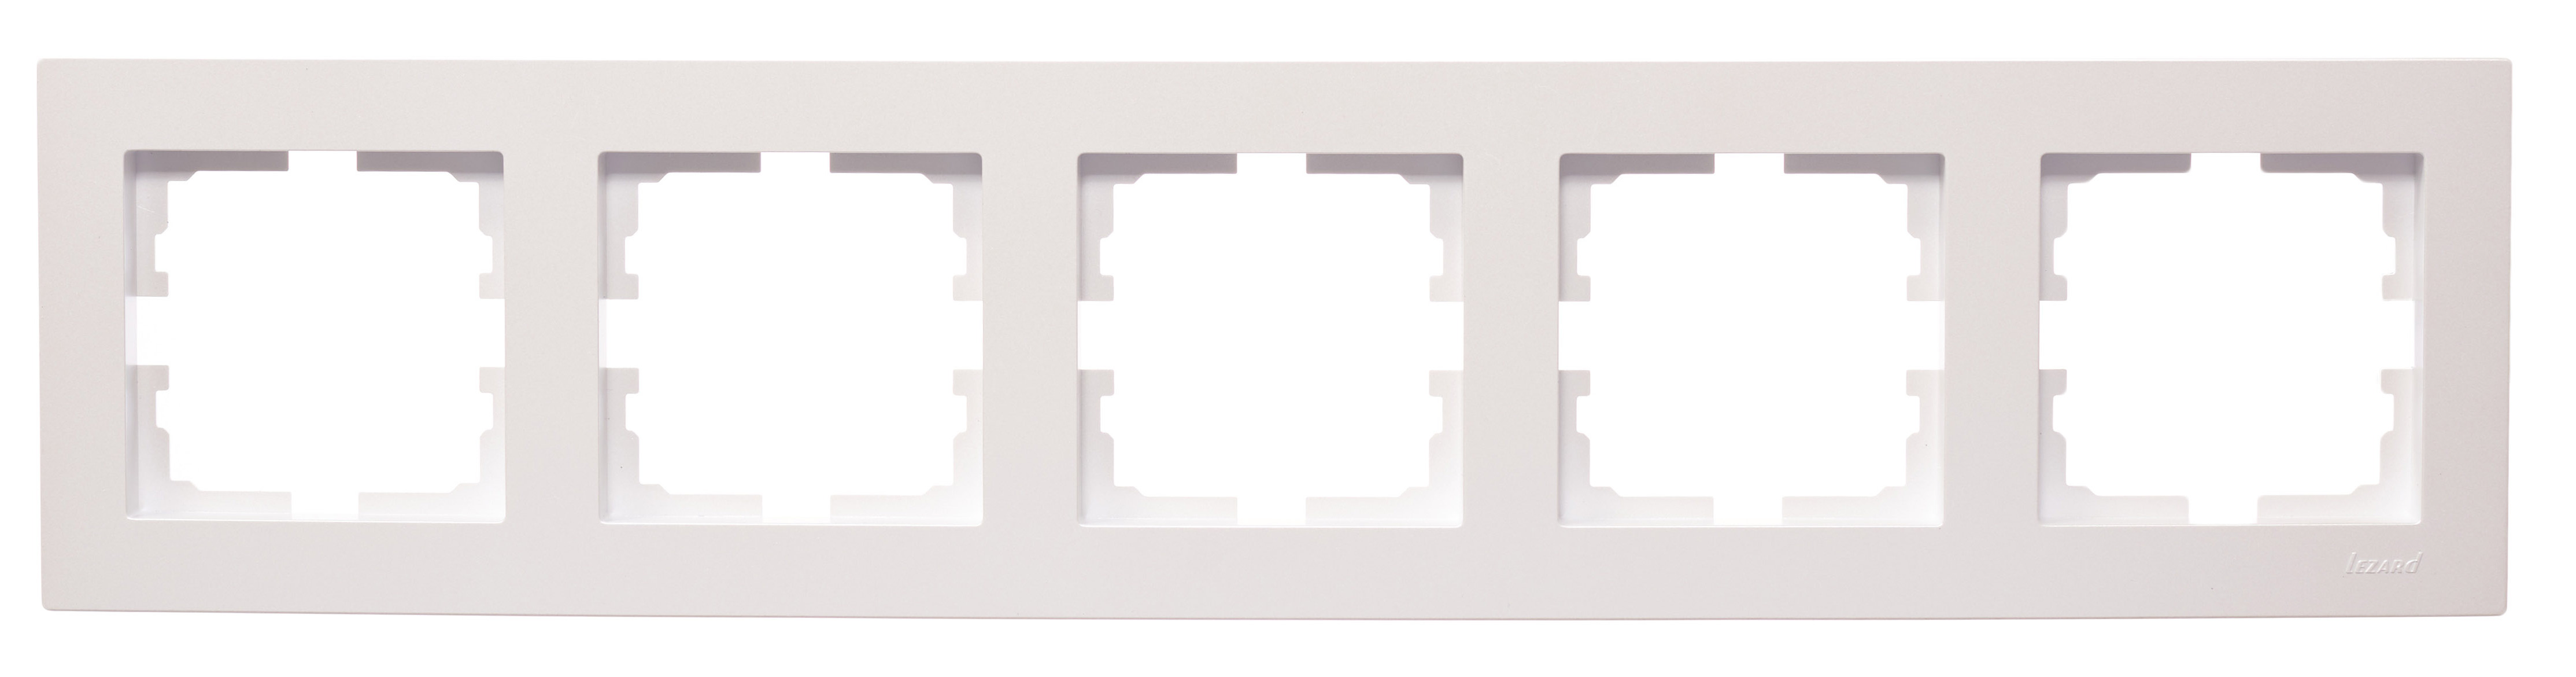 VESNA Рамка 5-ая горизонтальная б/вст жемчужно-белый перламутр (10шт/120шт)